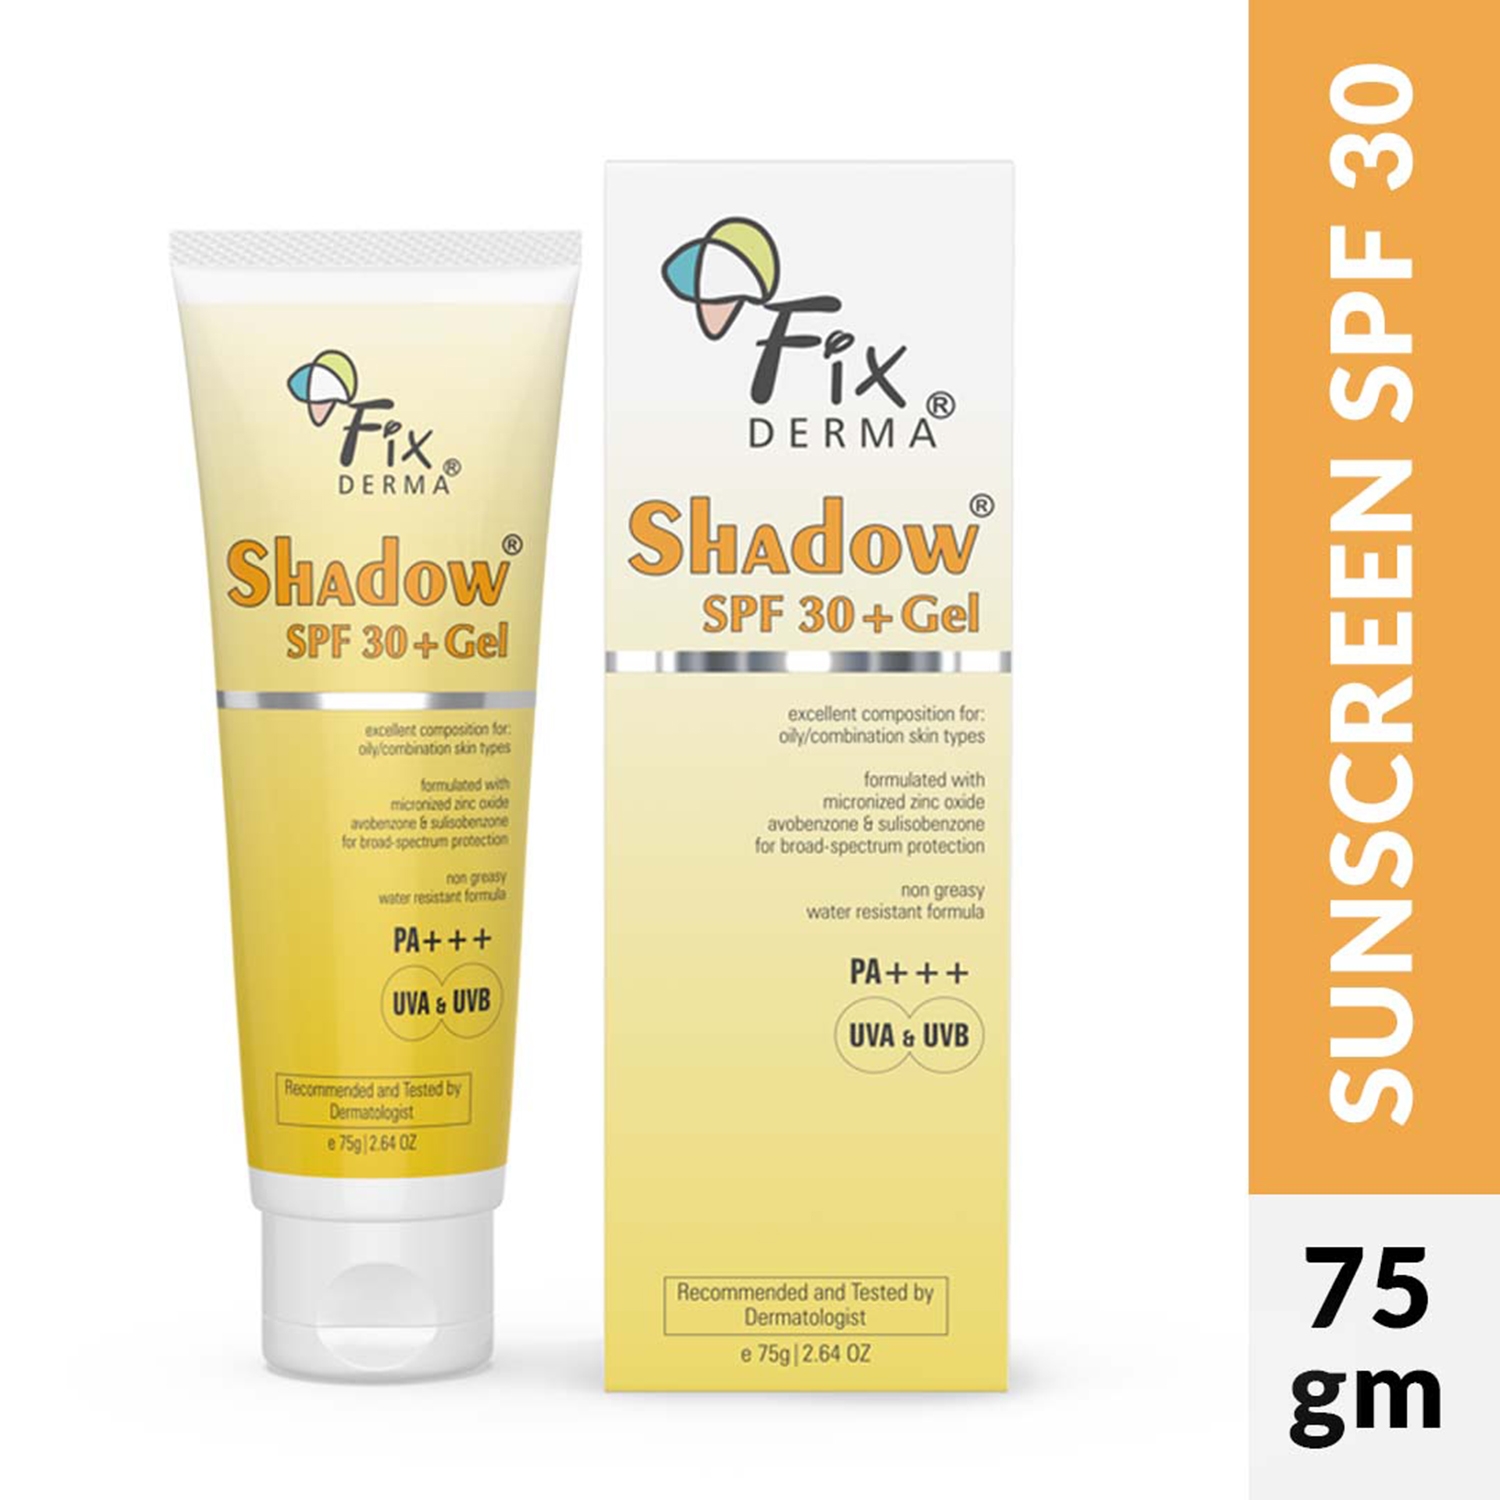 Fixderma Shadow SPF 30+ Gel - (75g)